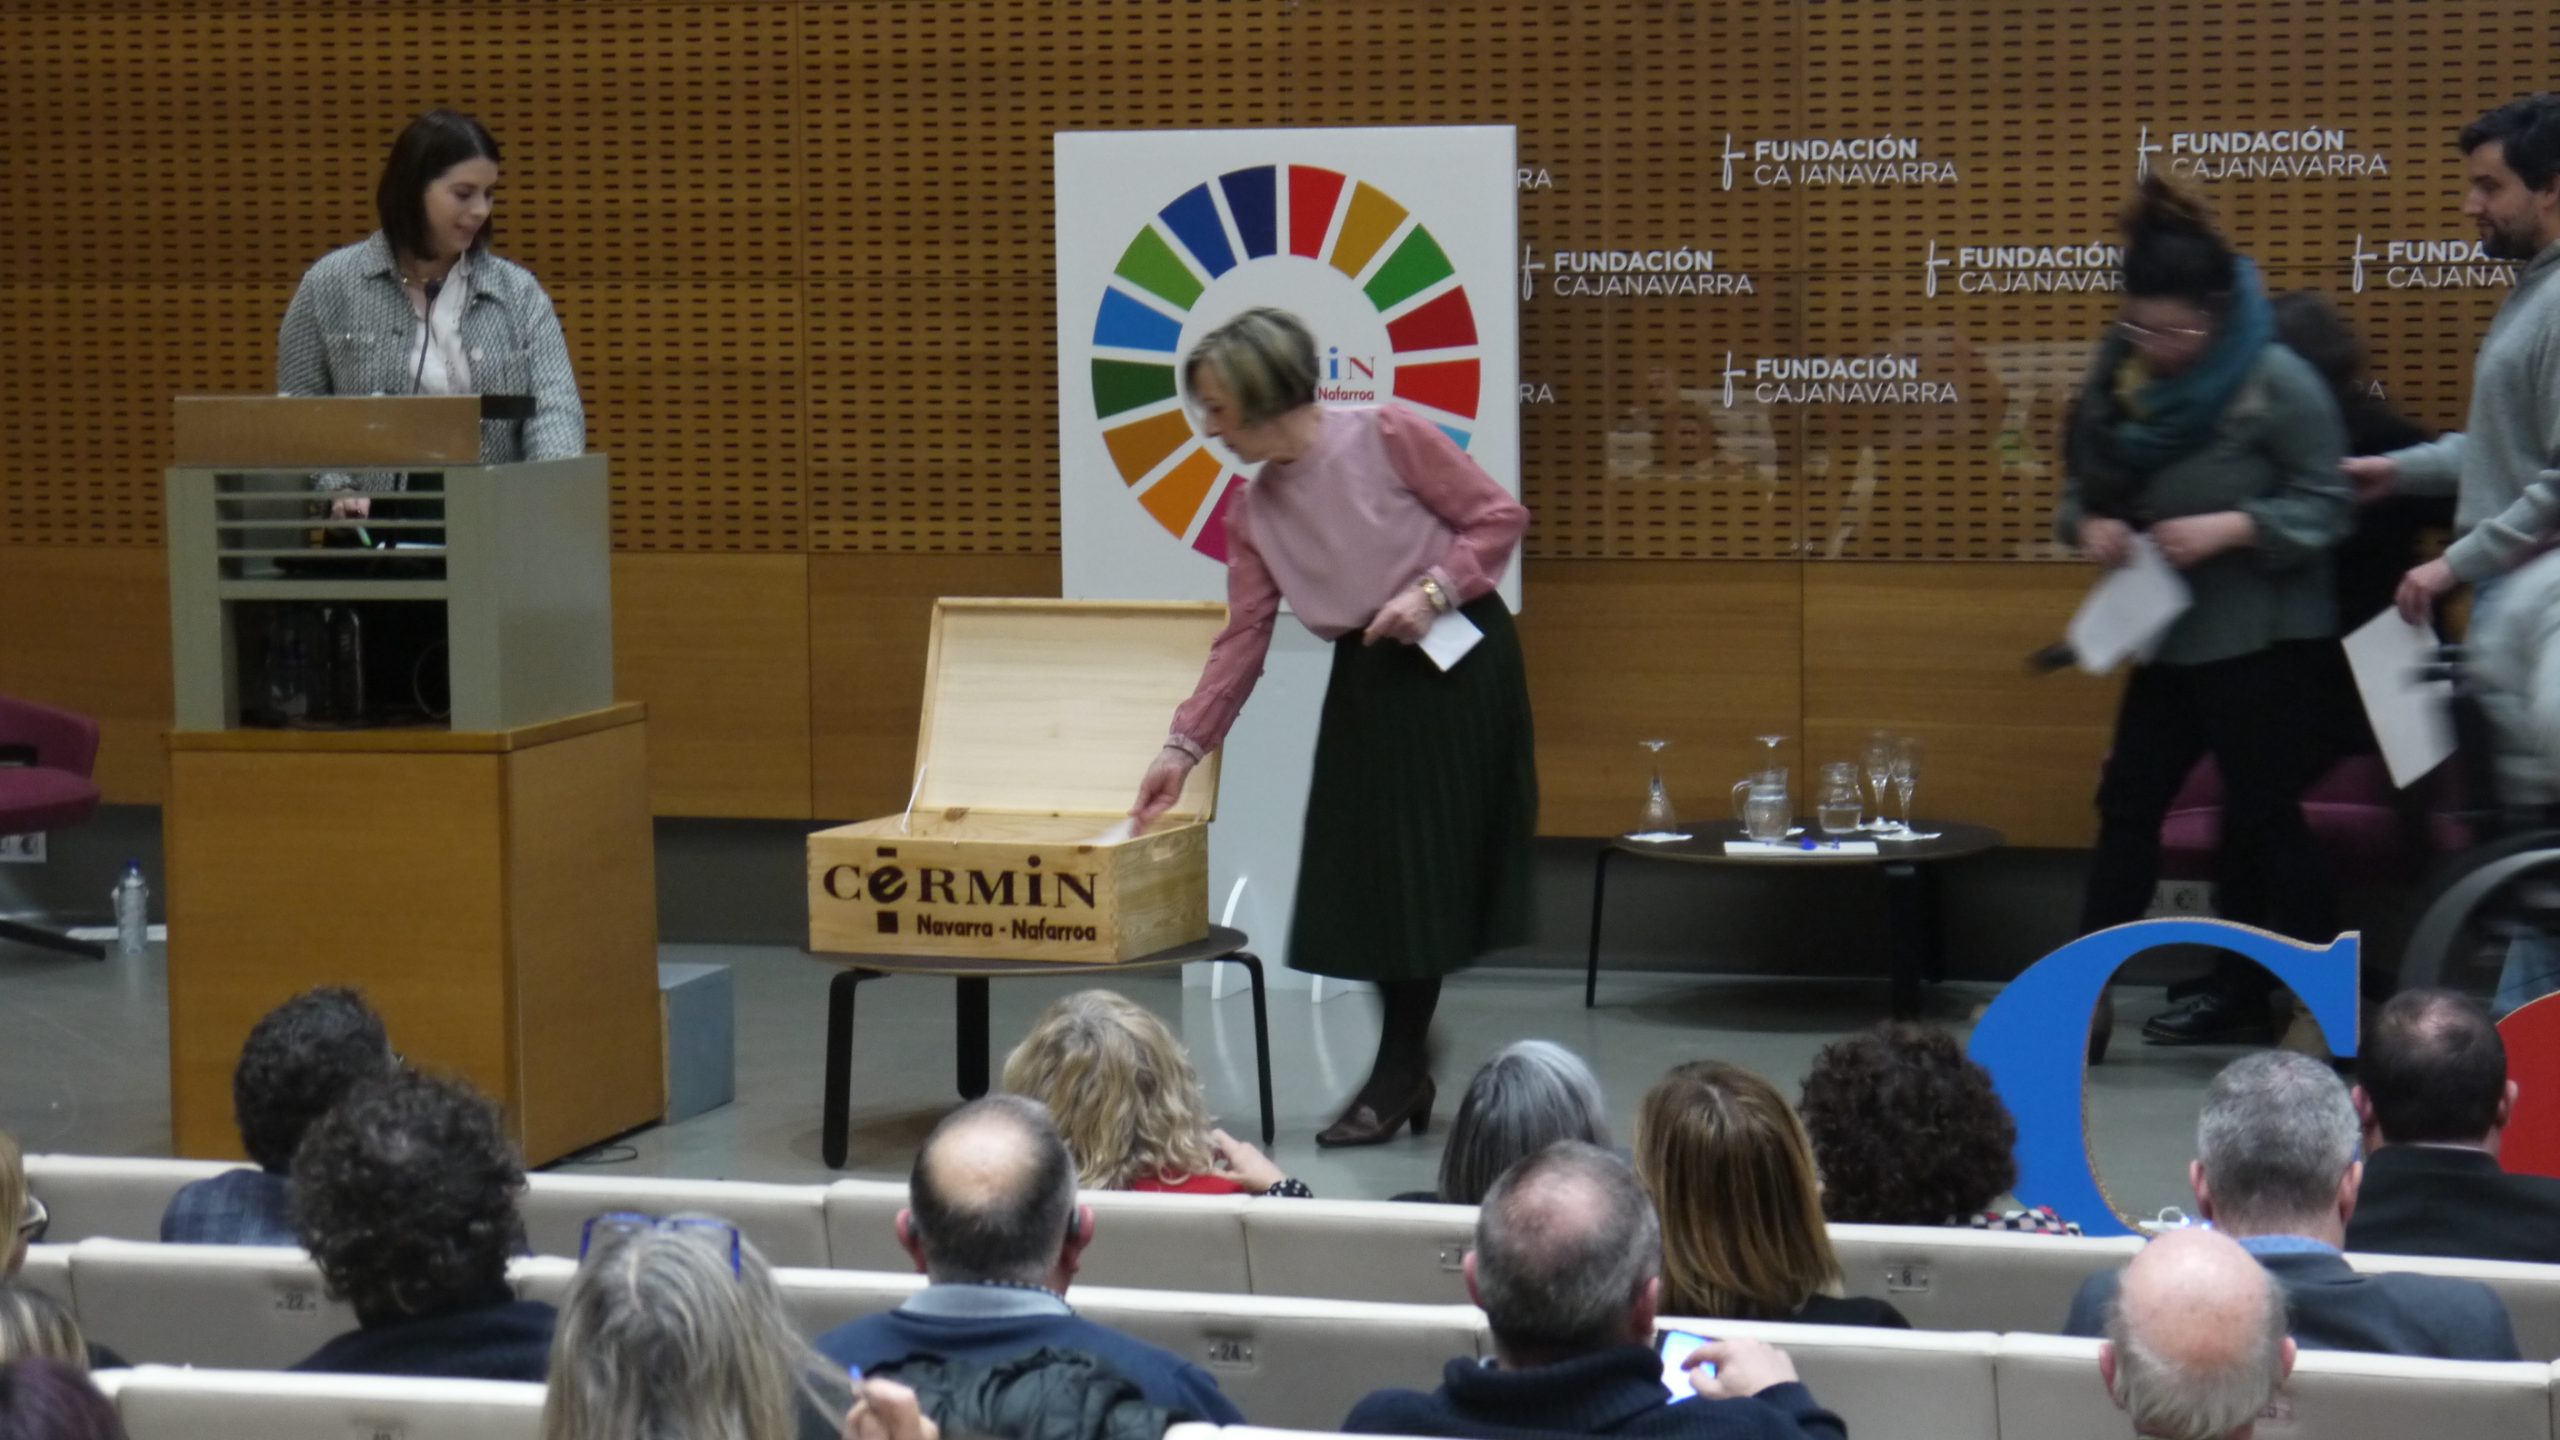 Una de las mujeres que ha leído el Manifiesto mete una tarjeta en una caja de madera. Detrás hay un cartel con el logo de CERMIN y de los ODS.